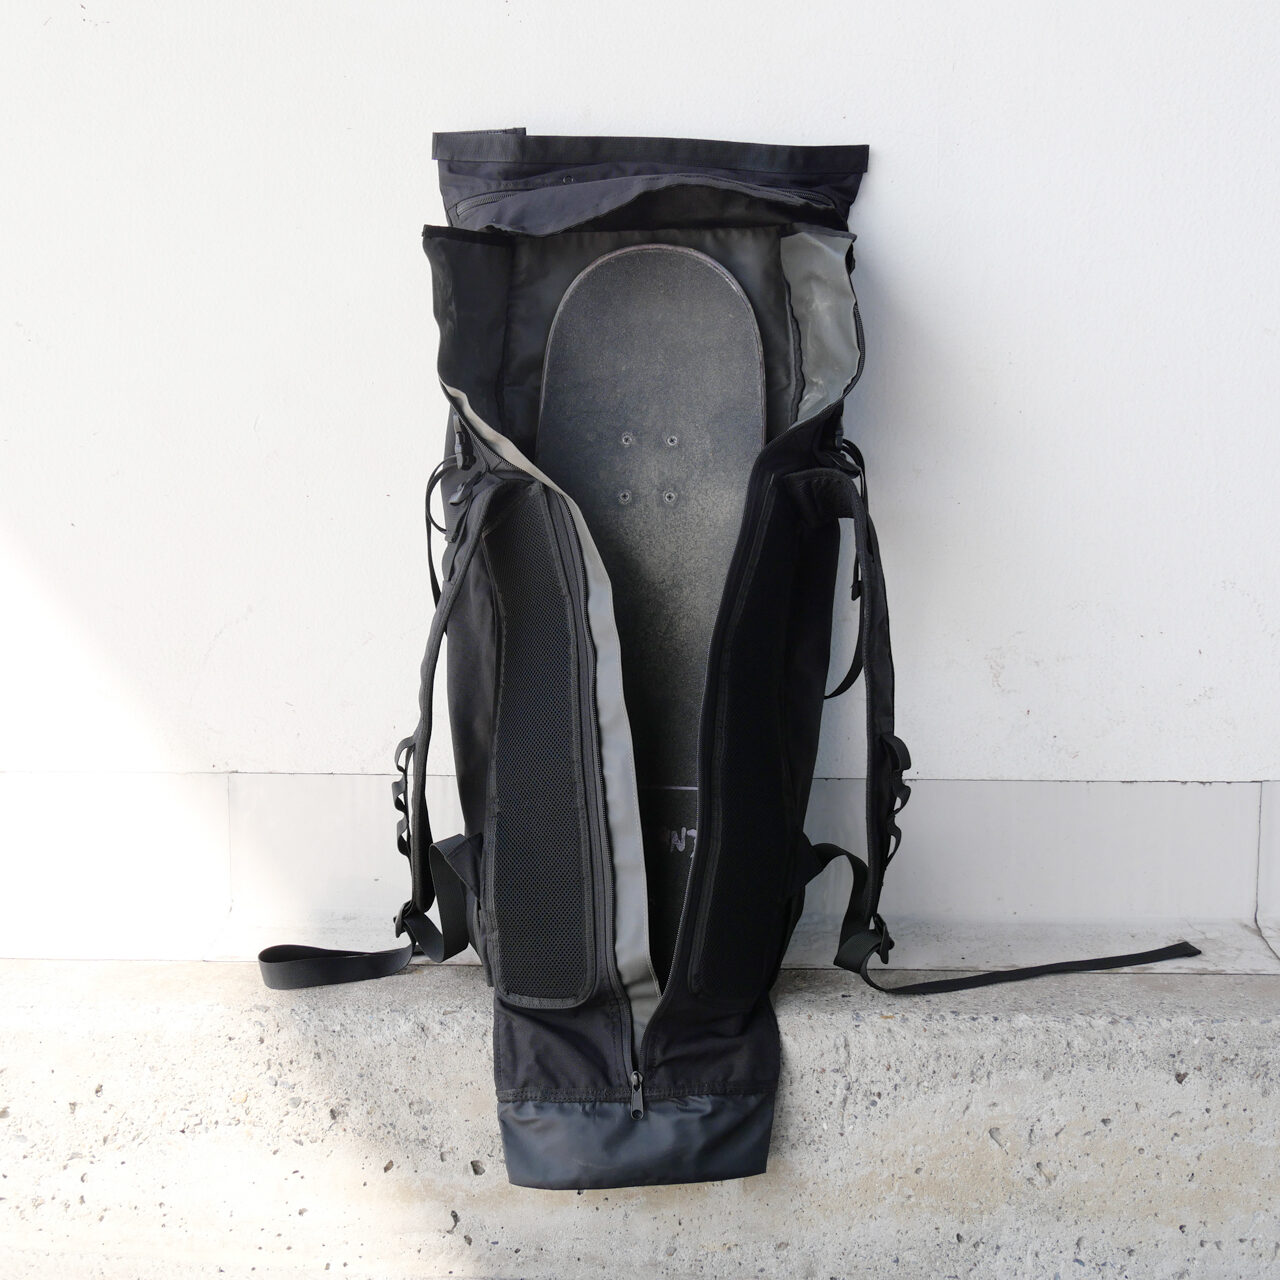 Stealth | Vaga – Bags for skateboarding